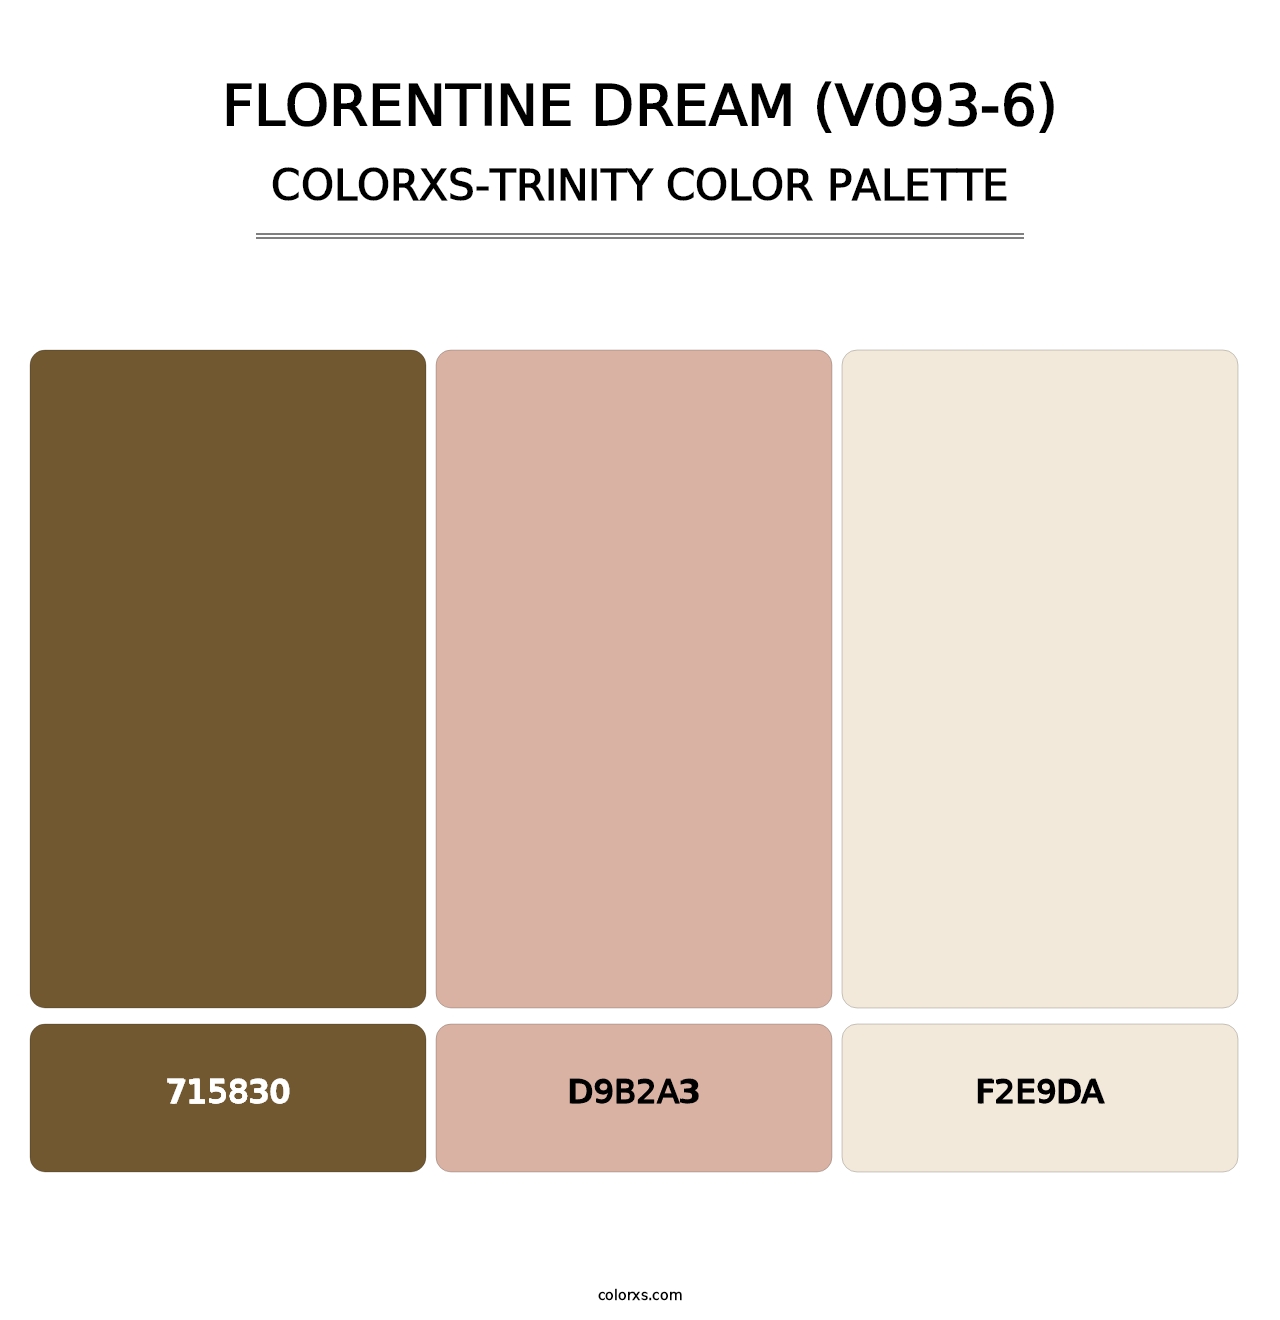 Florentine Dream (V093-6) - Colorxs Trinity Palette